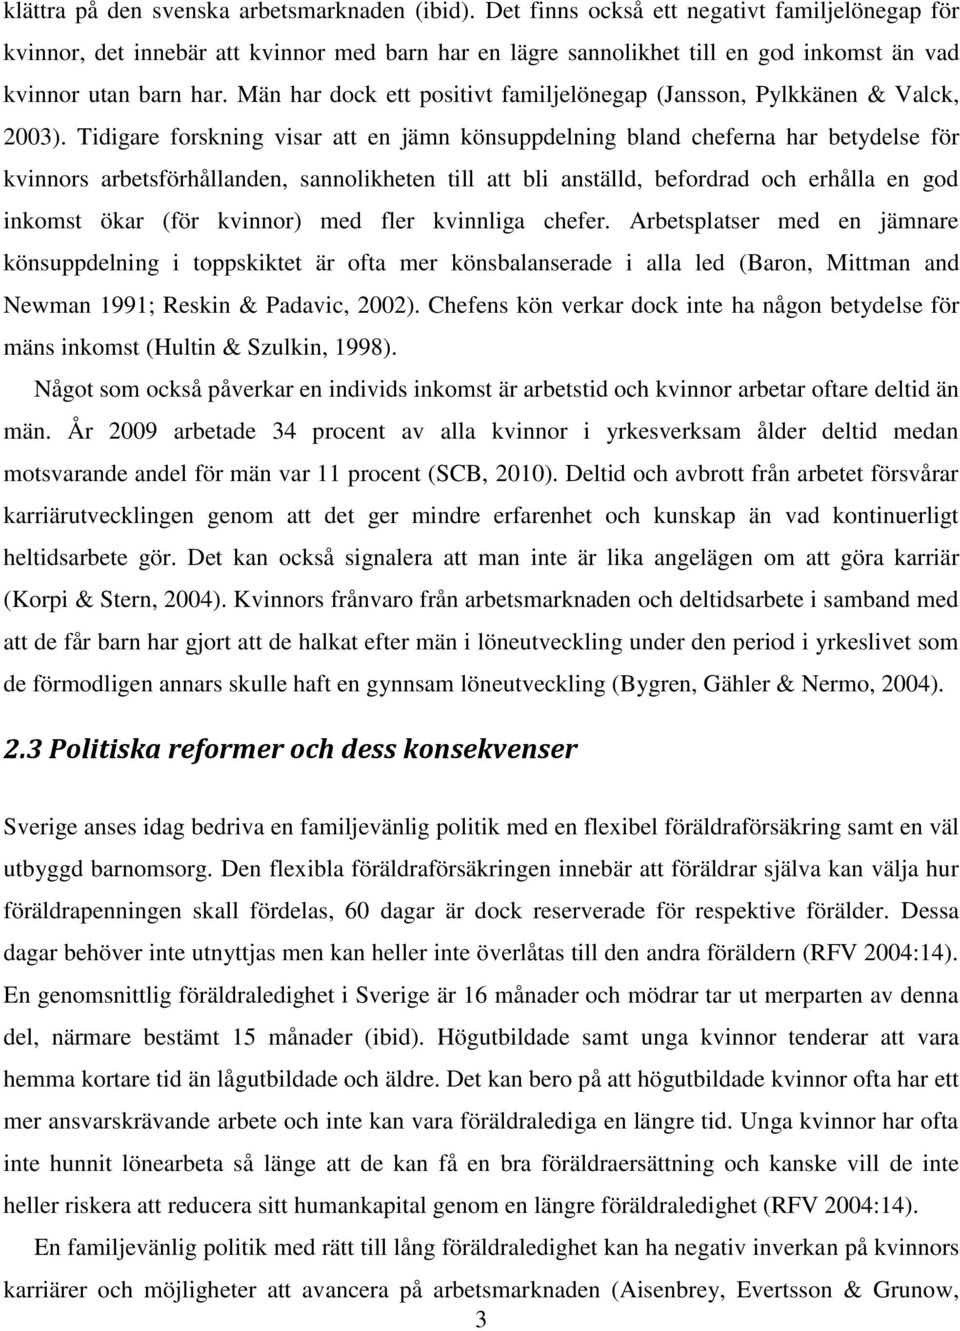 Män har dock ett positivt familjelönegap (Jansson, Pylkkänen & Valck, 2003).